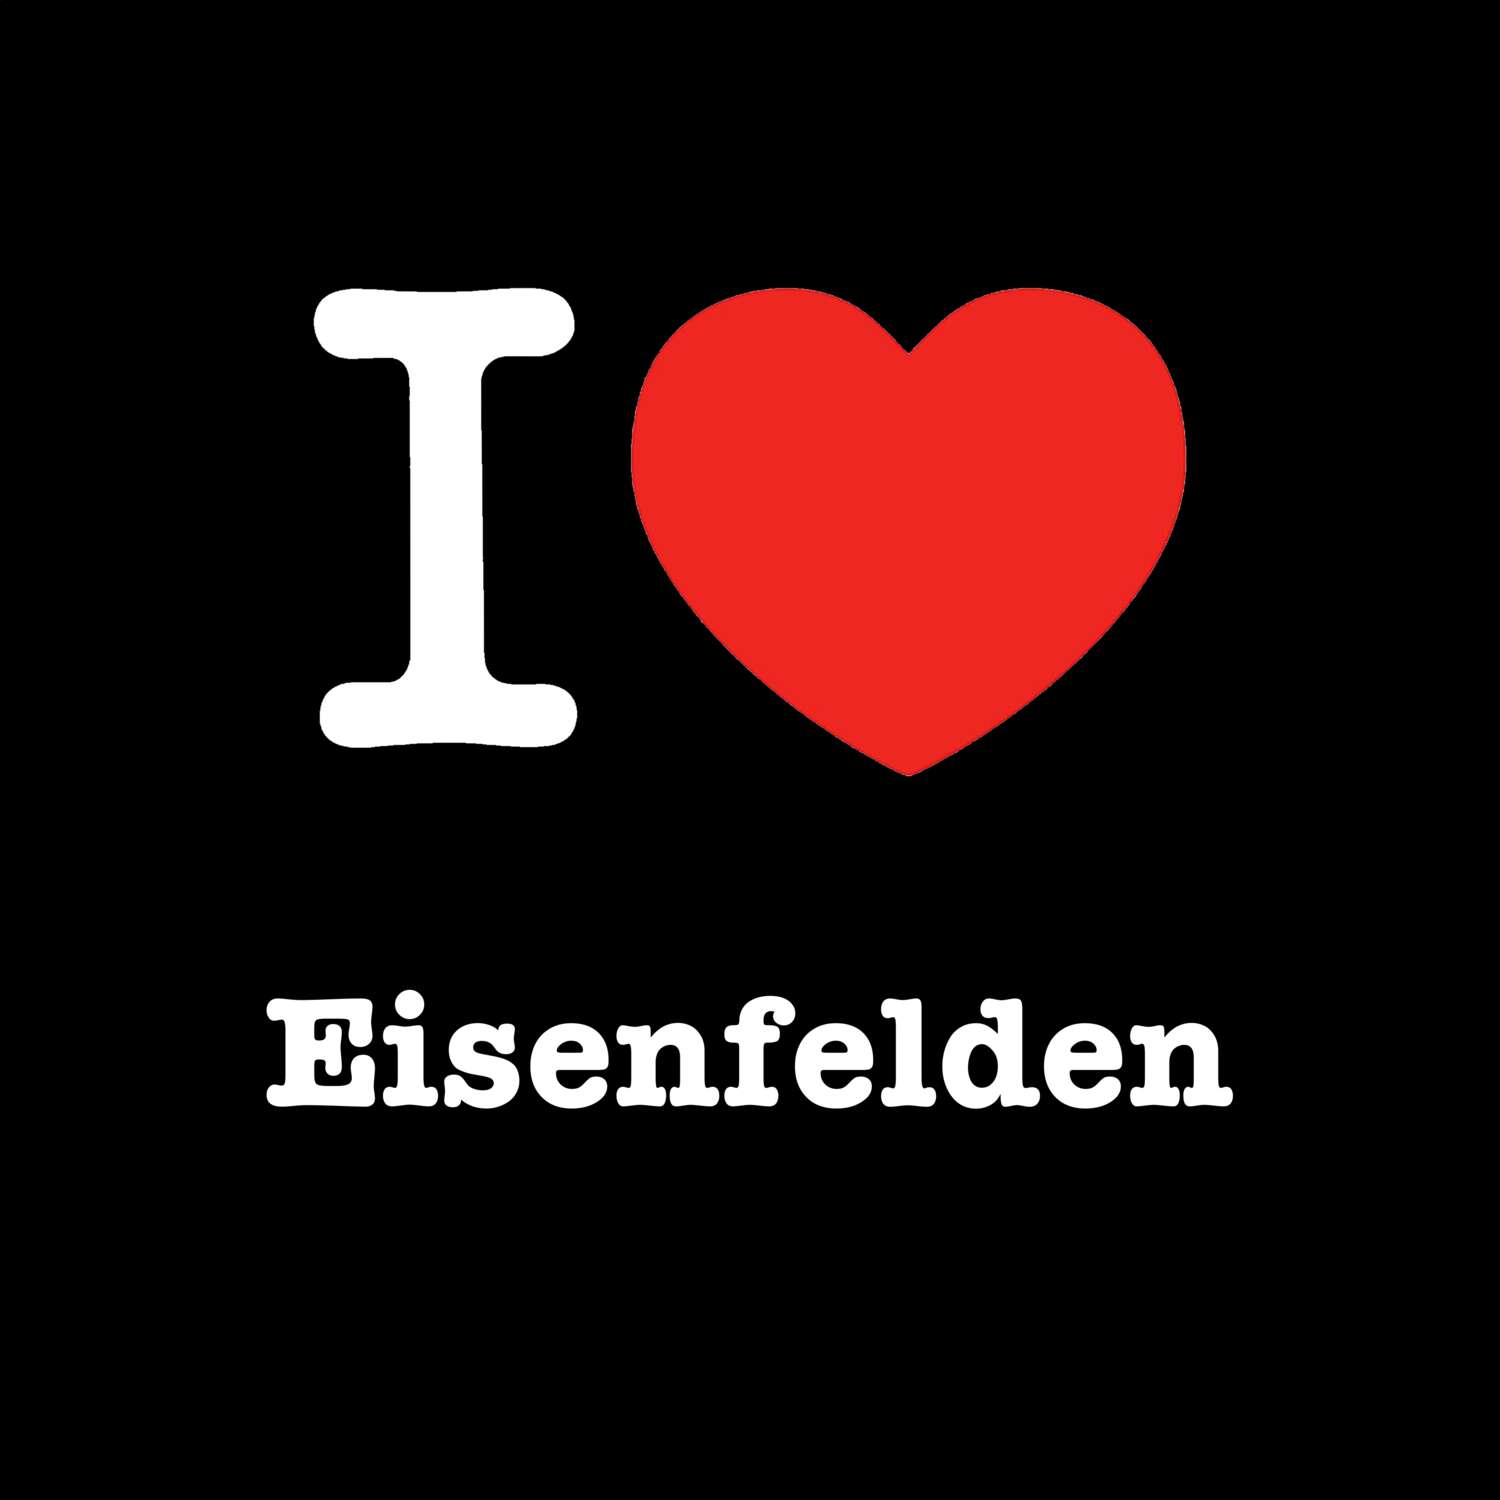 Eisenfelden T-Shirt »I love«